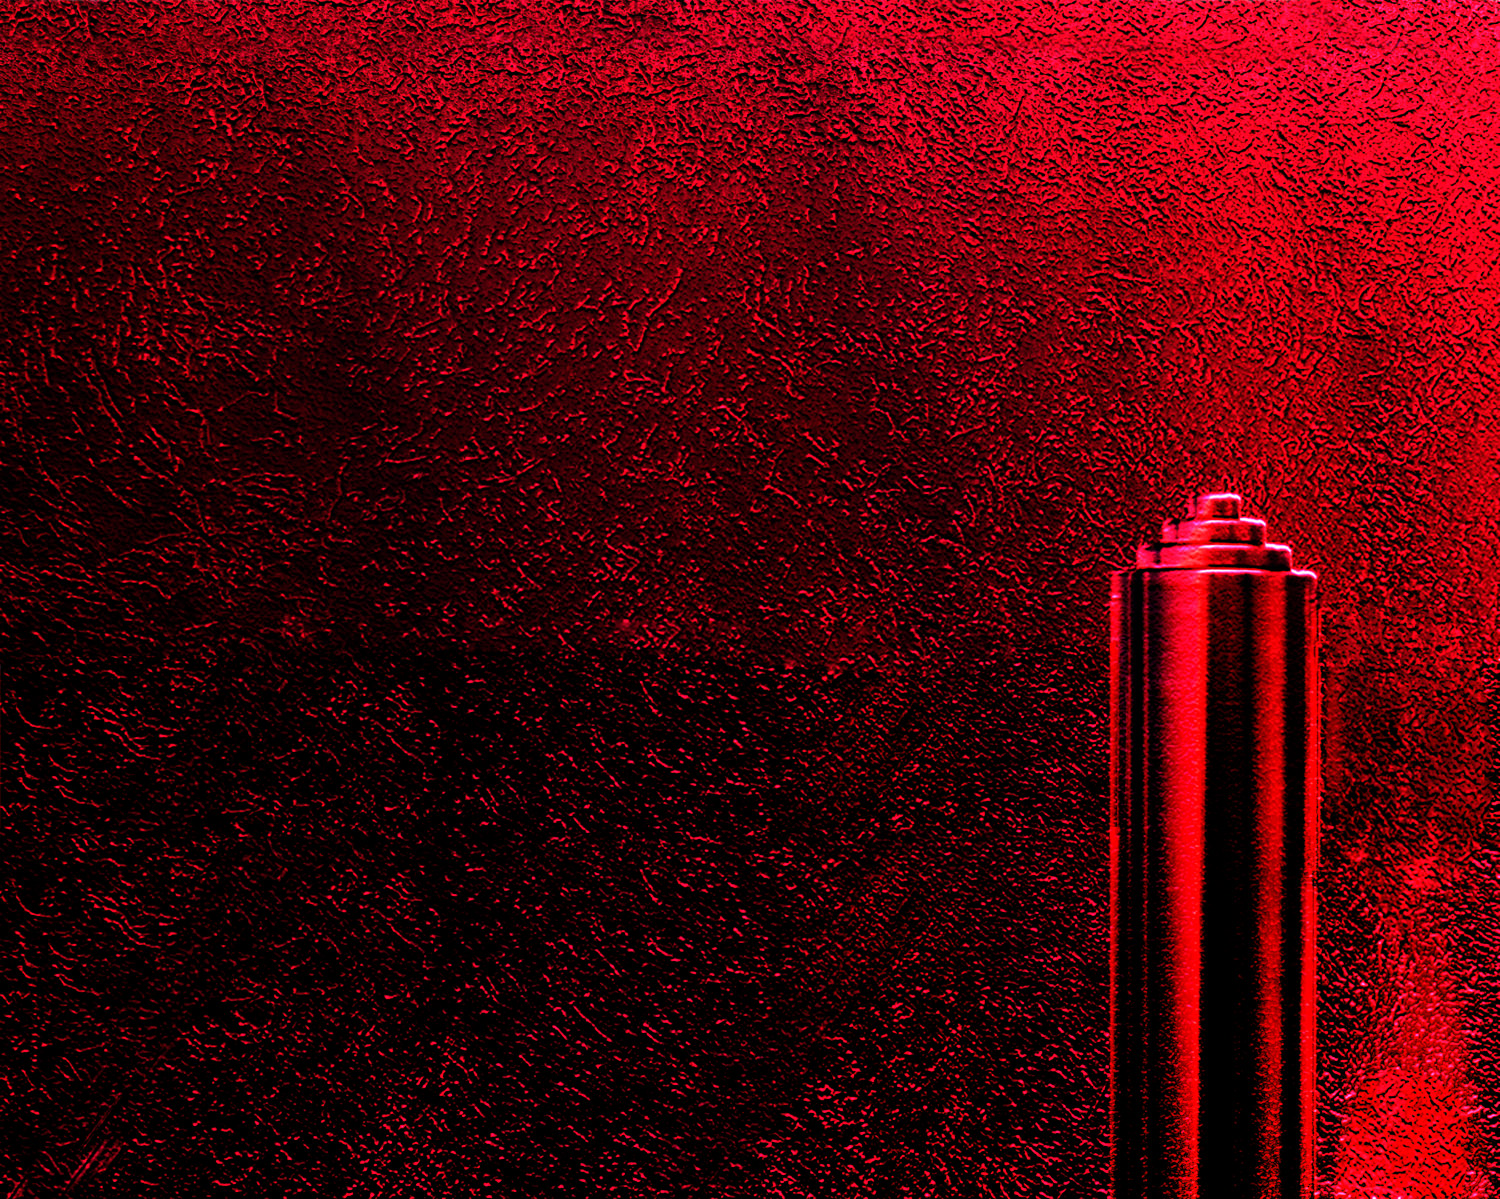 Red skyscraper